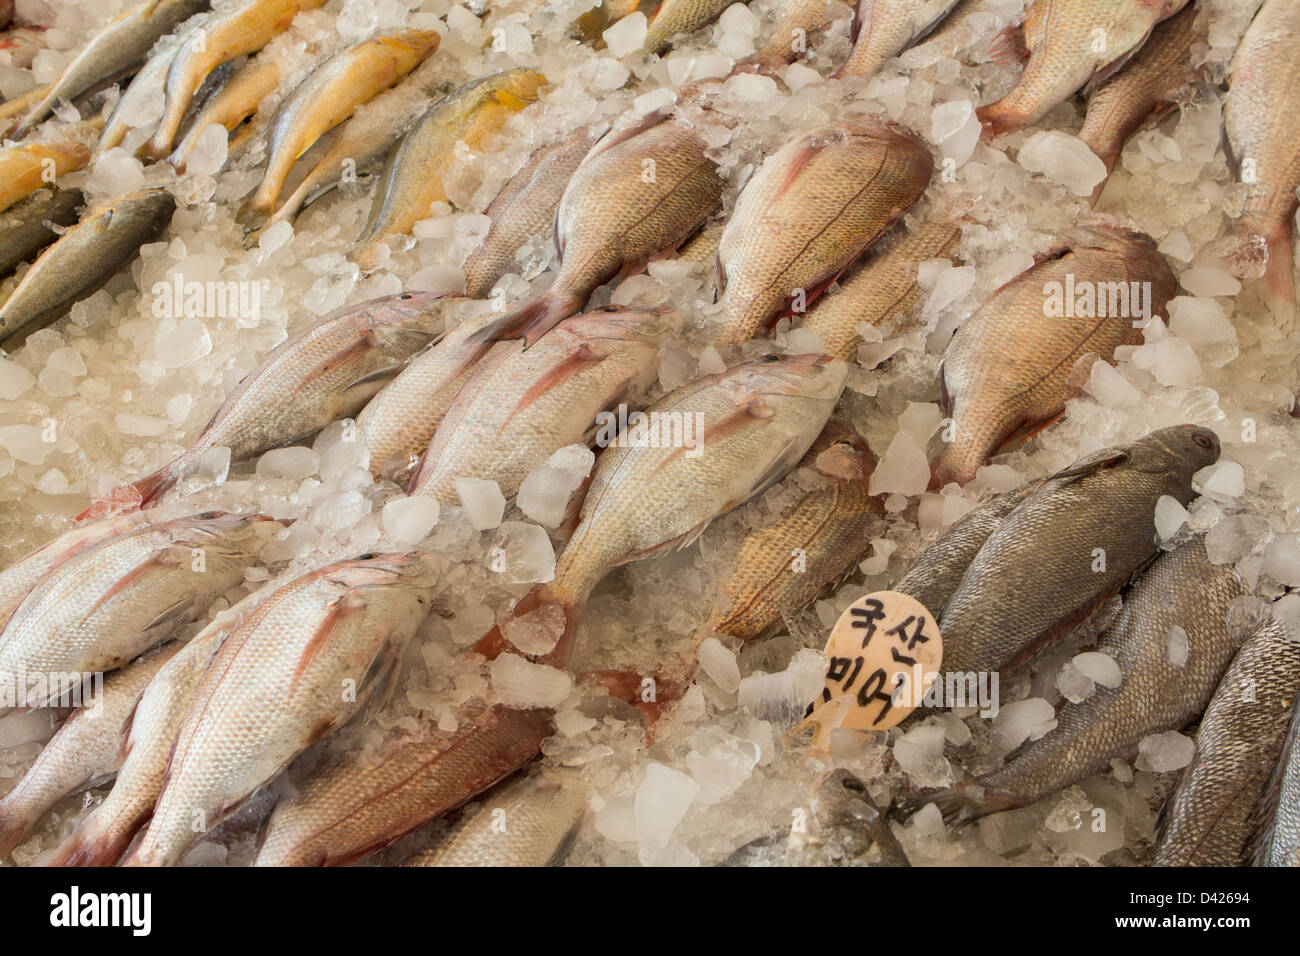 Fresh fish at Jagalchi fish market, Busan, South Korea Stock Photo